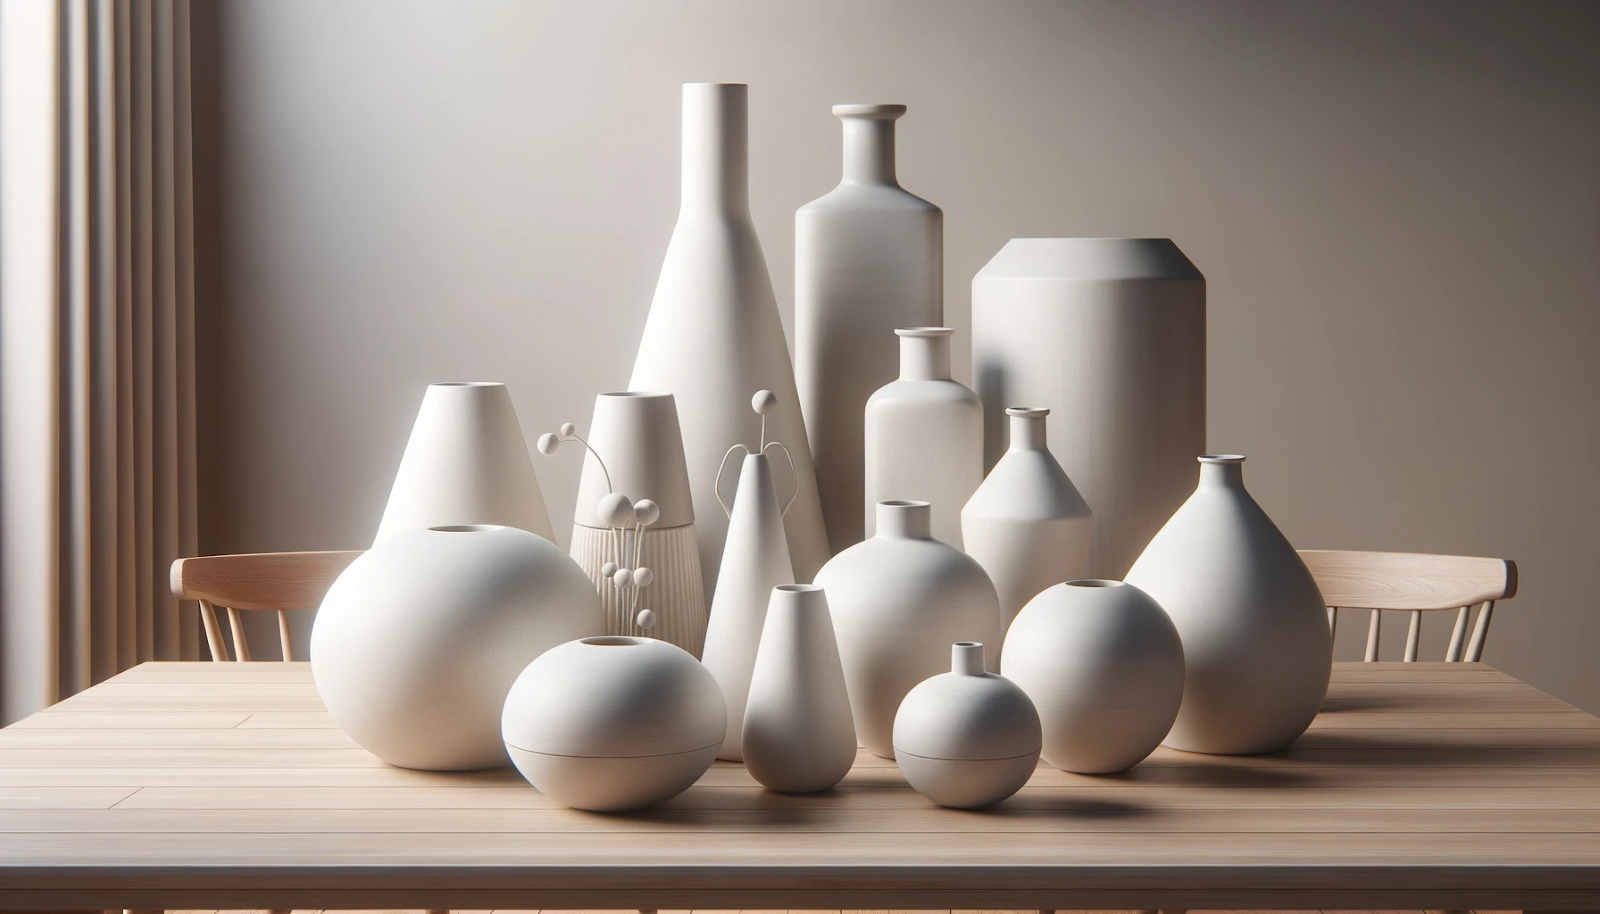 Foto de um cenário moderno e realista mostrando vários vasos de cimento branco. Os vasos variam em tamanho e formato, cada um com design elegante e minimalista, colocados sobre uma mesa de madeira contra um fundo neutro.